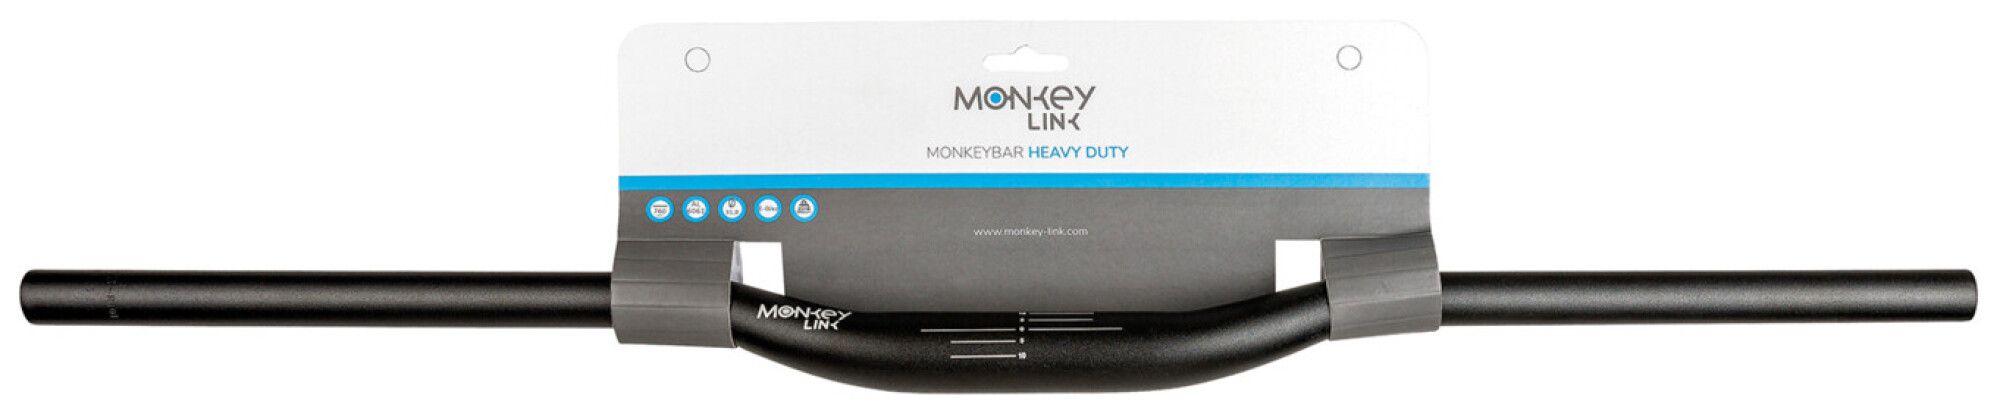 MonkeyLink MONKEYBAR HEAVY DUTY (Bild 1)